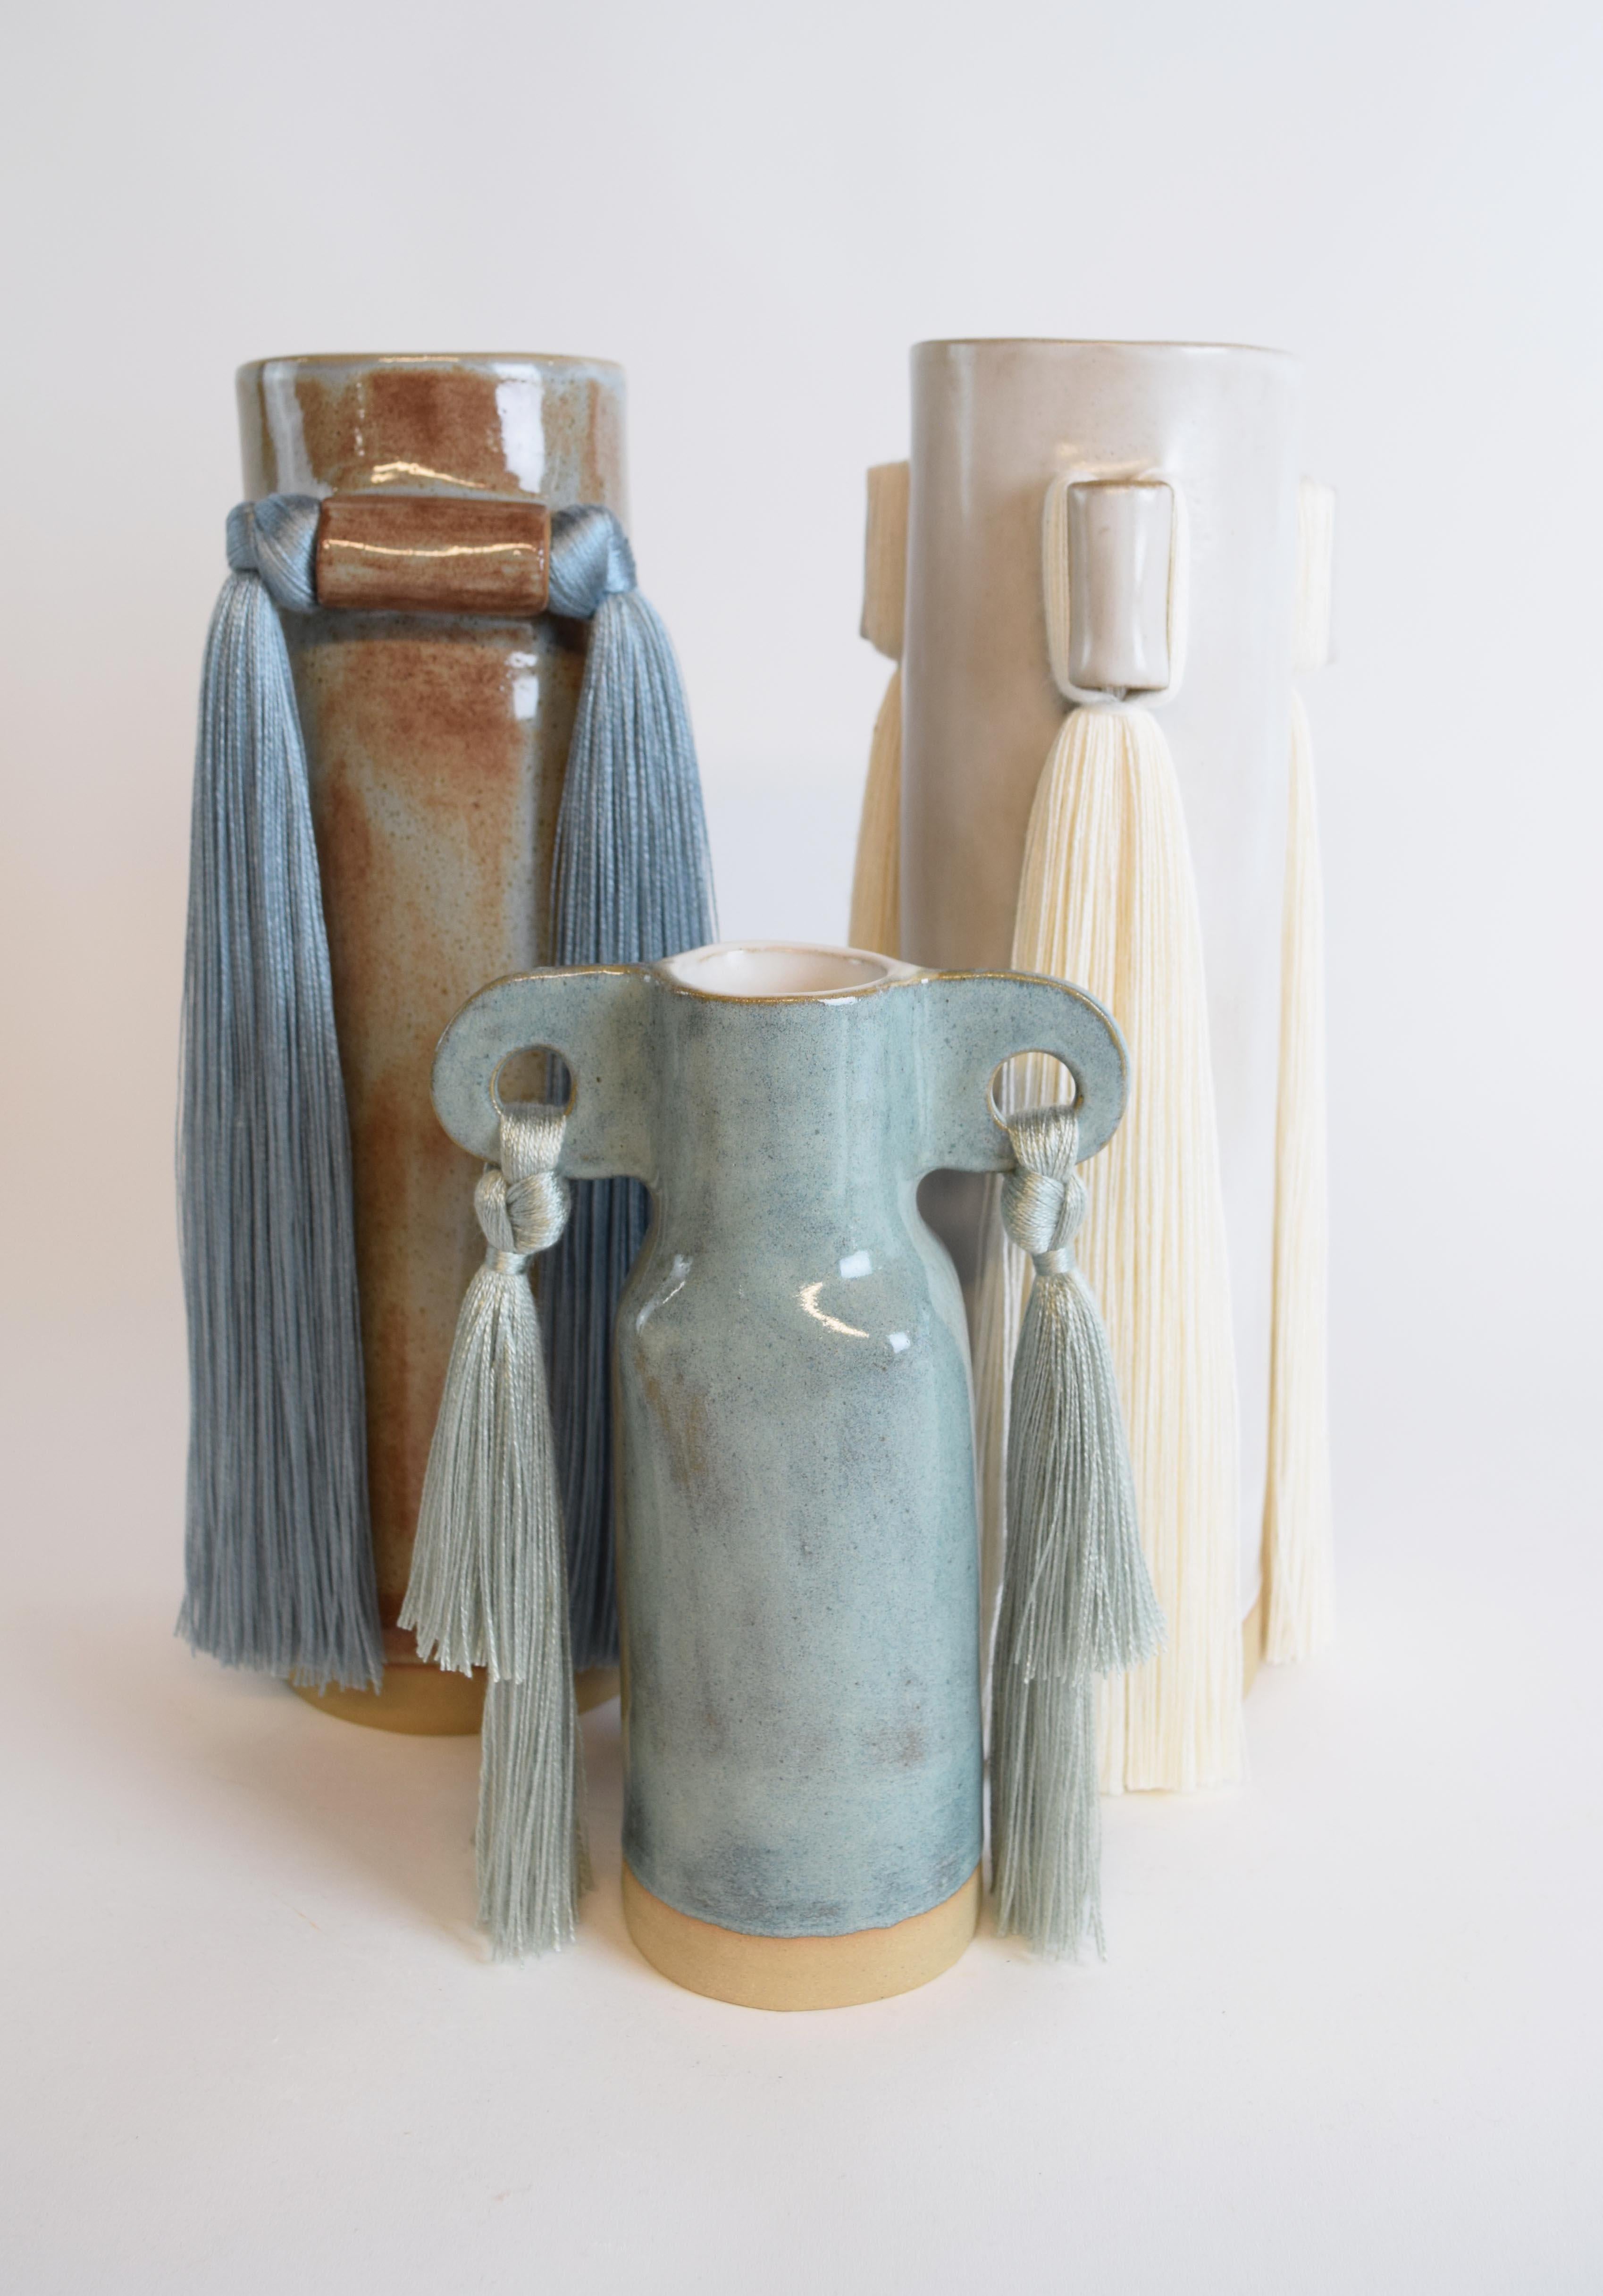 Hand-Crafted Handmade Ceramic Vase #606 Sage - Pale Green Glaze with Tencel Fringe Details For Sale